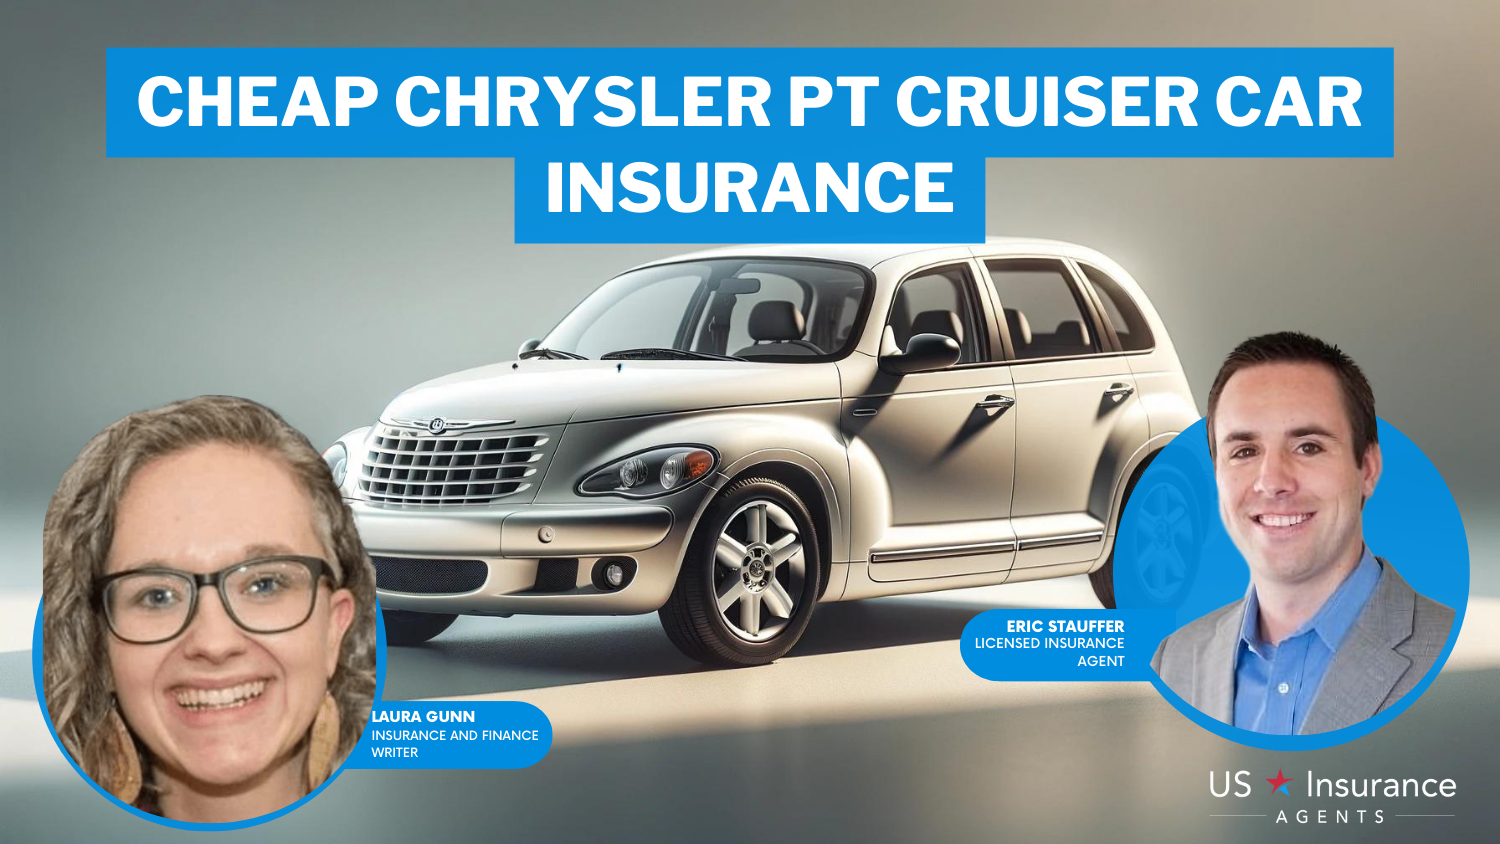 Cheap Chrysler PT Cruiser Car Insurance: Allstate, State Farm, and Travelers